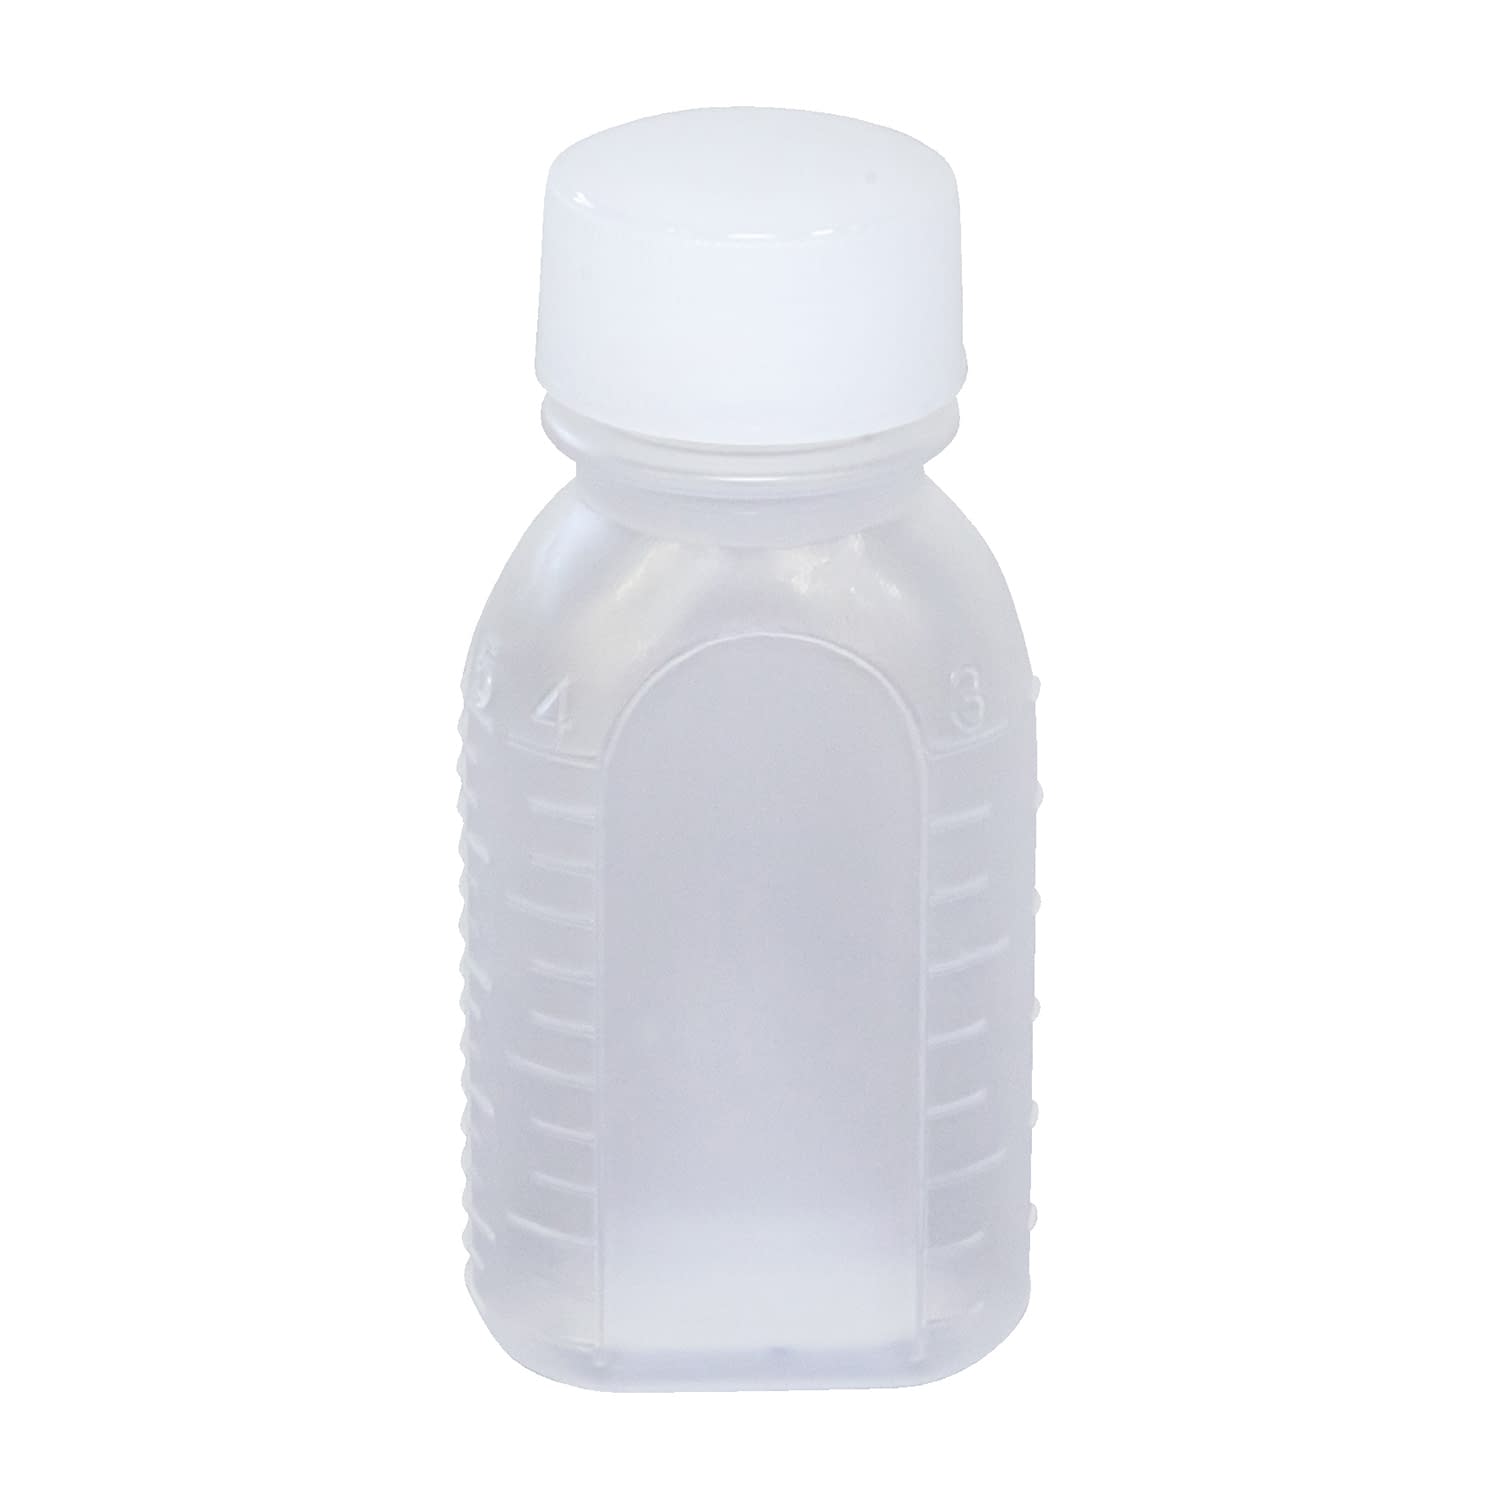 投薬瓶ＰＰＢ（滅菌済） 30CC(20ﾎﾟﾝX25ﾌｸﾛｲﾘ) キャップ：緑30cc緑【エムアイケミカル】FALSE(08-2855-01-03)